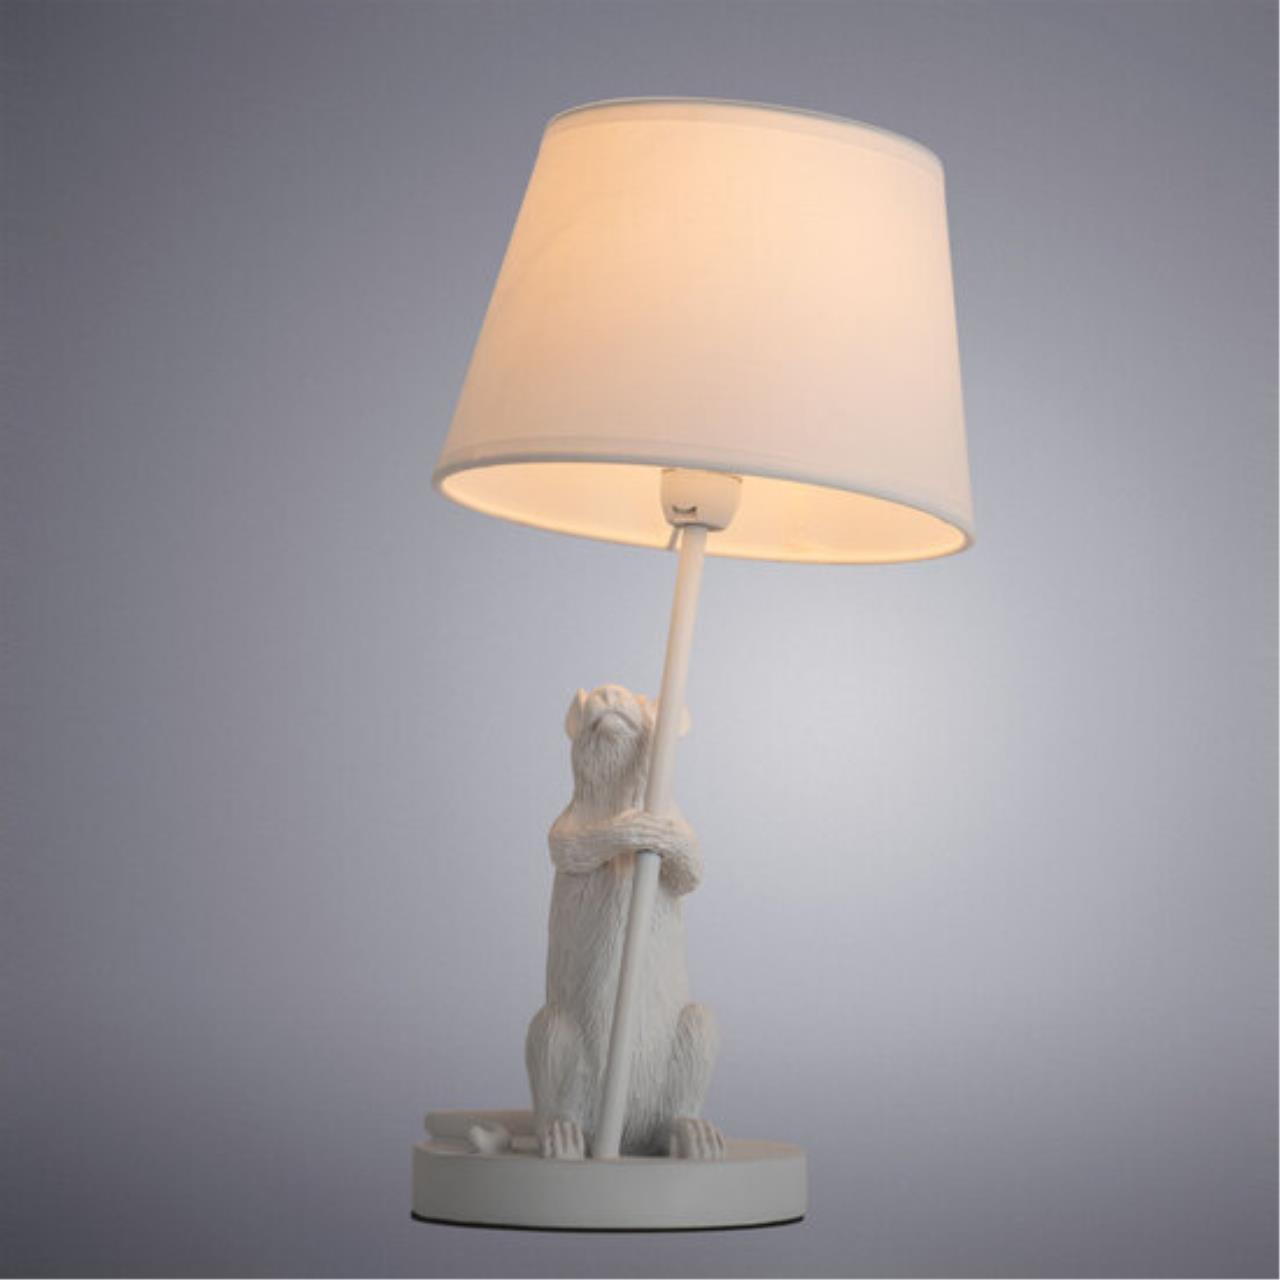 Интерьерная настольная лампа Arte lamp A4420LT-1WH